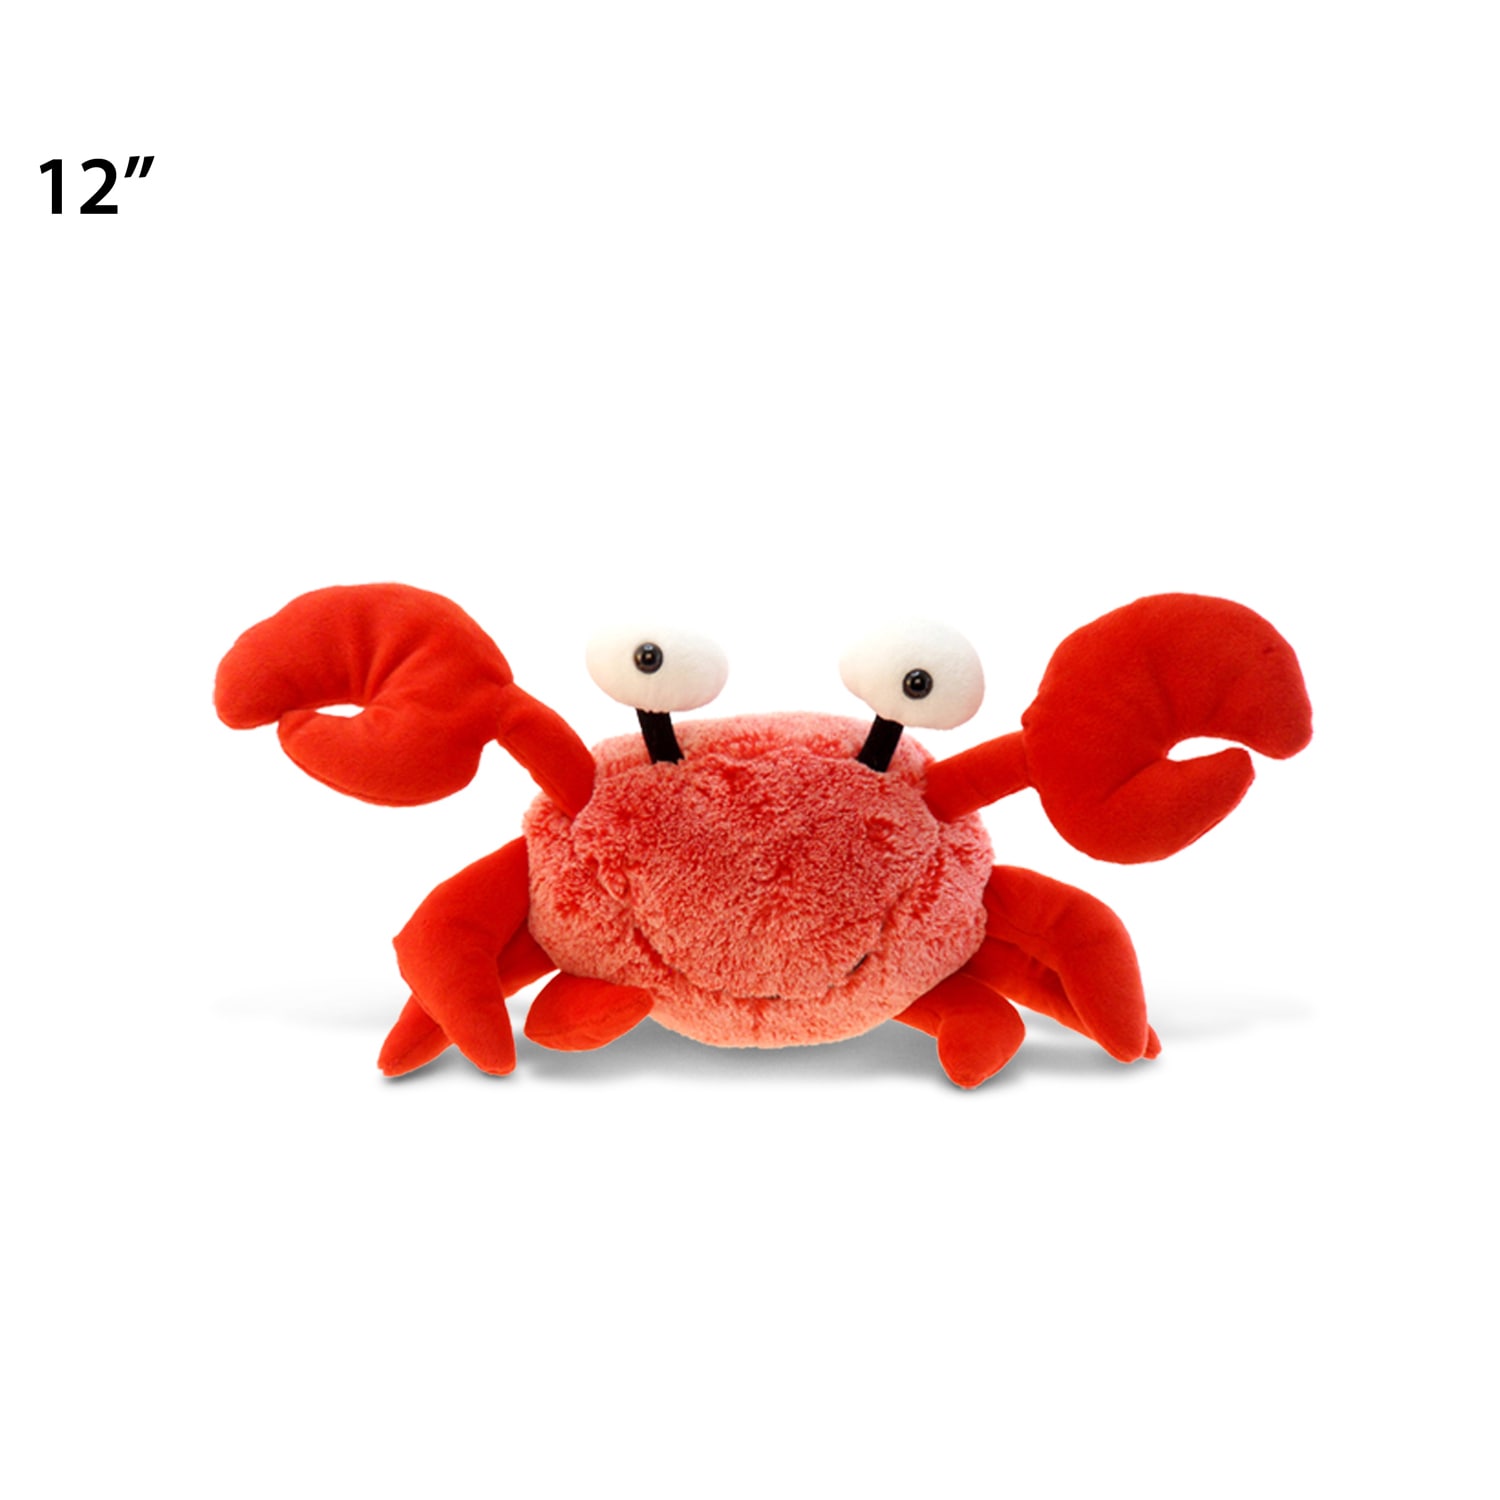 crab plush